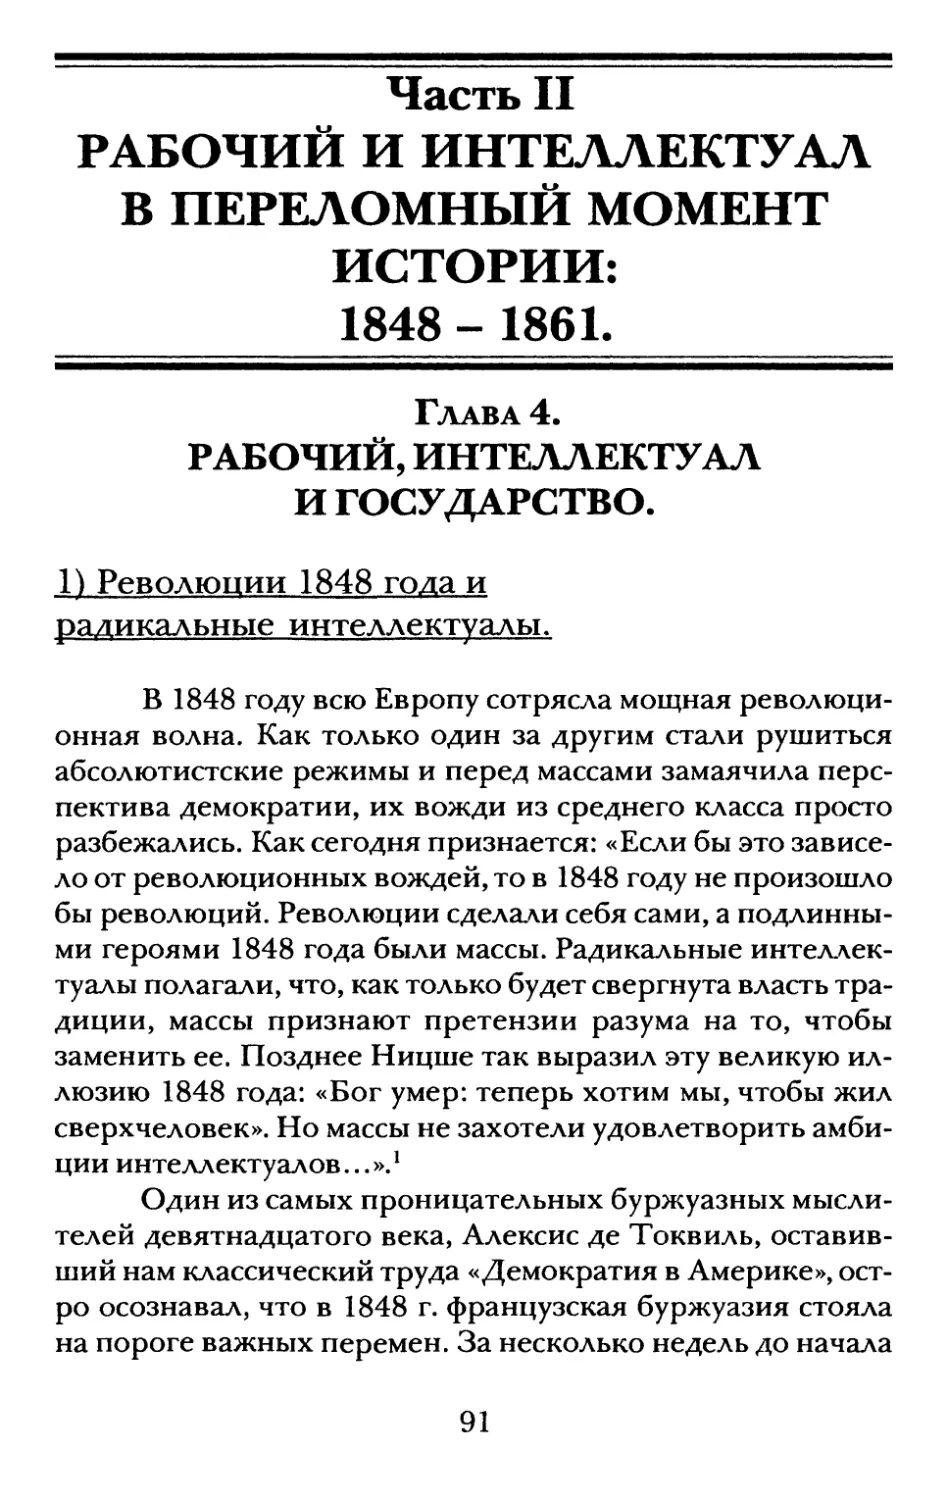 Часть II. Рабочий и интеллектуал в переломный момент истории: 1848-1861